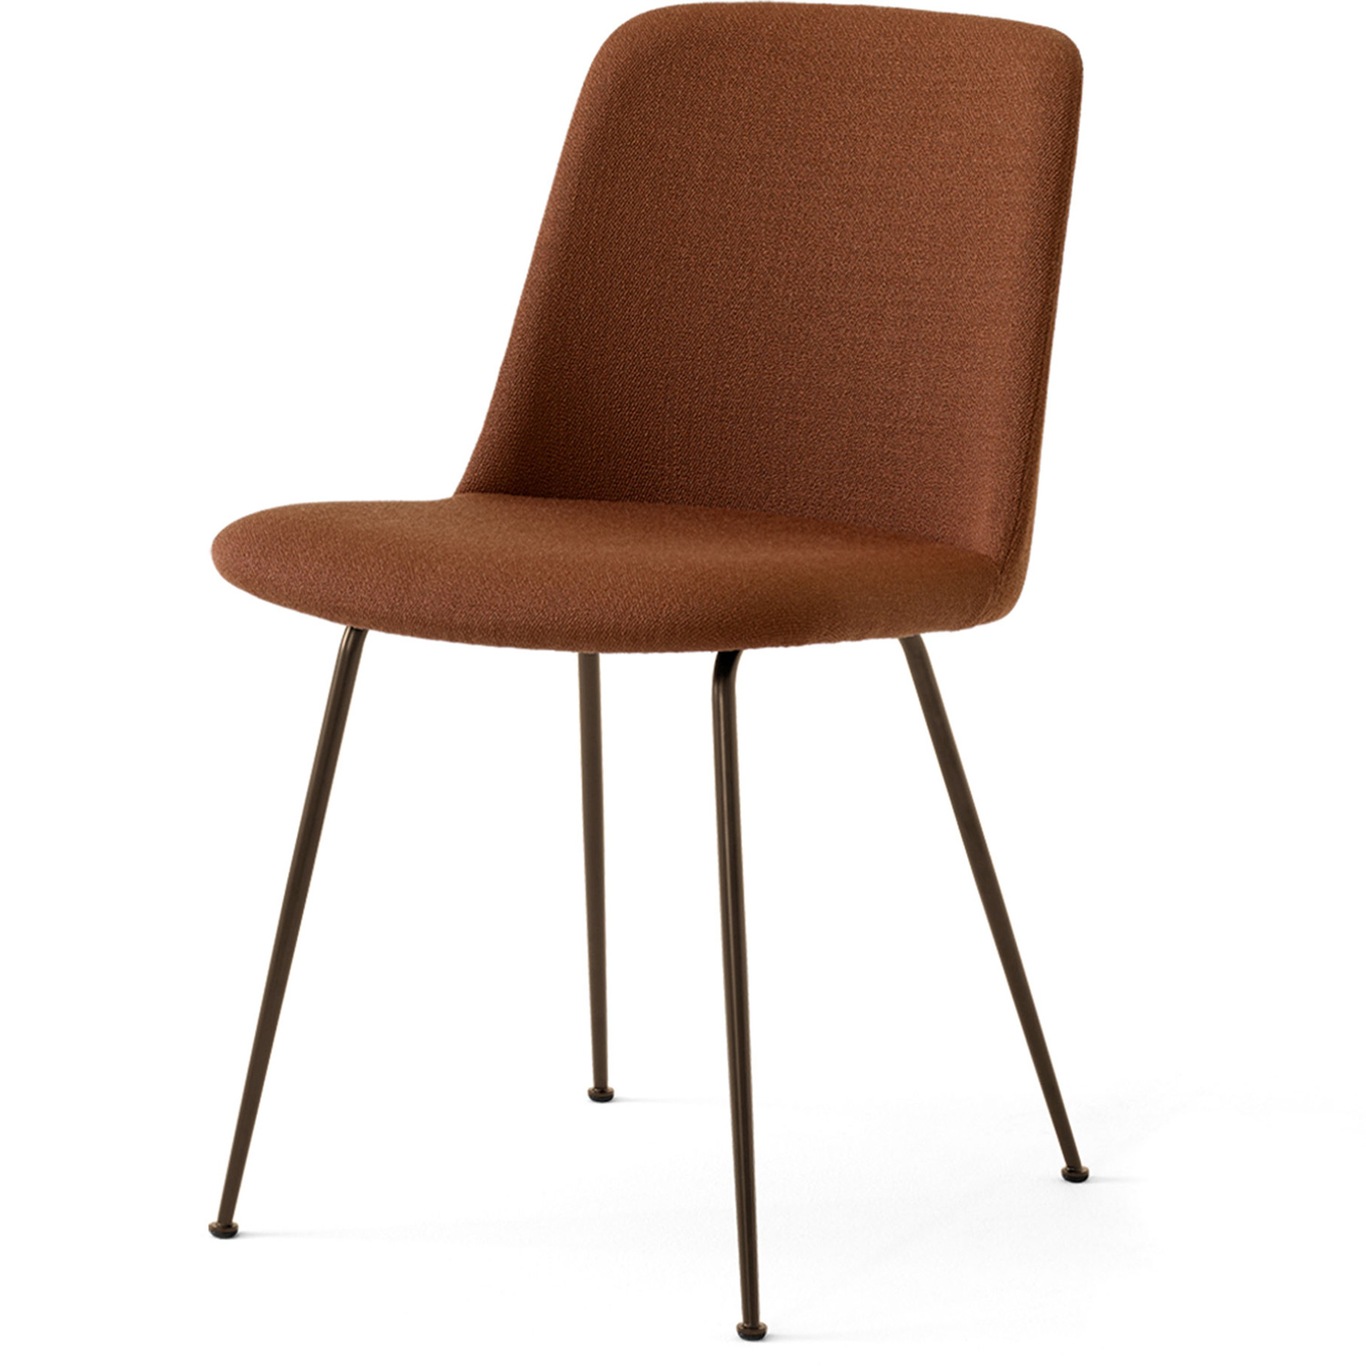 Rely Chair HW8, Bronzed / Vidar 363 Rust Brown